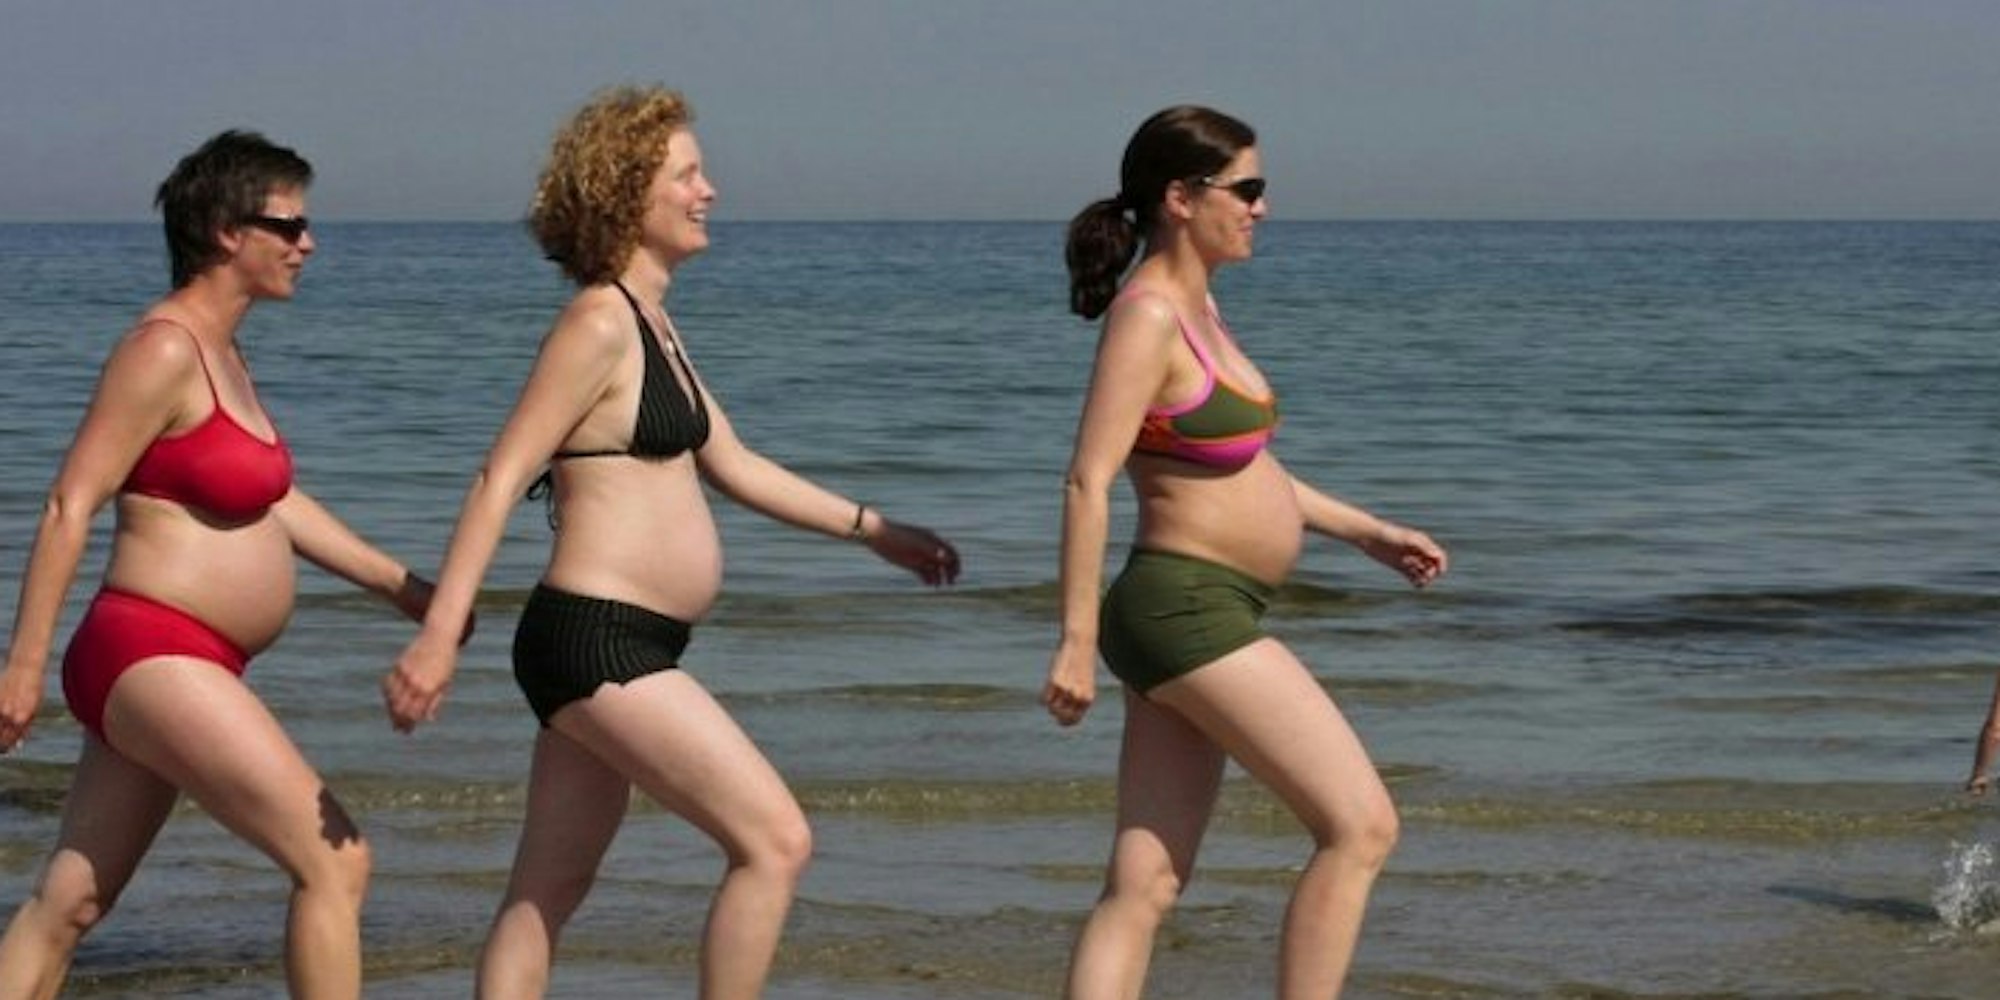 Da Wassersport besonders gelenkschonend ist, empfiehlt es sich für Schwangere.